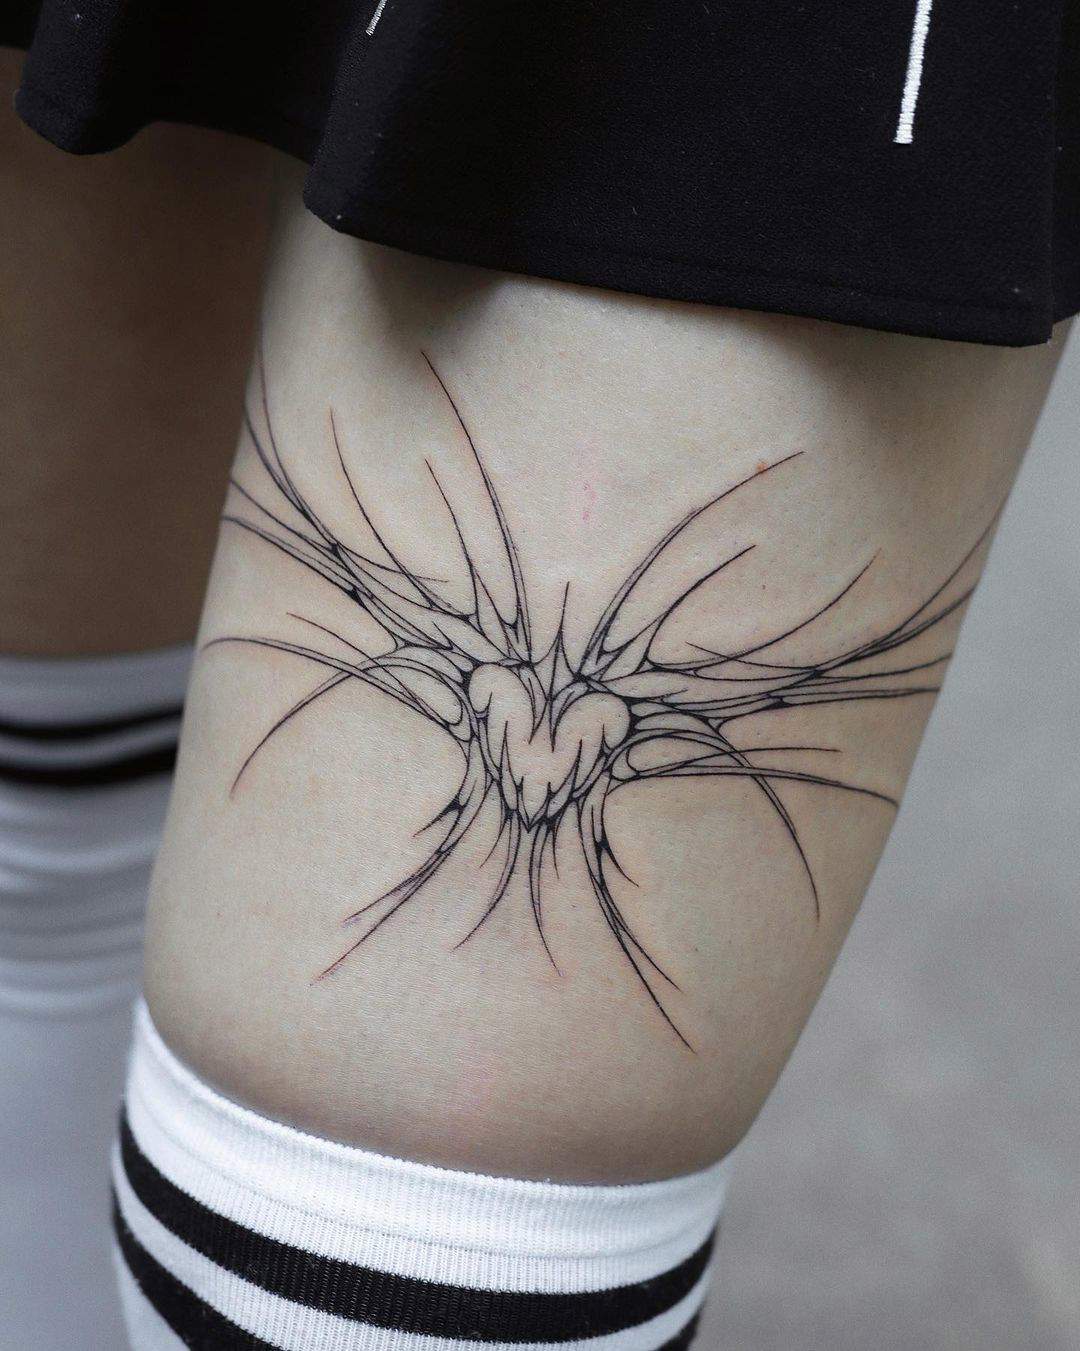 Tatuaje neotribal en una pierna